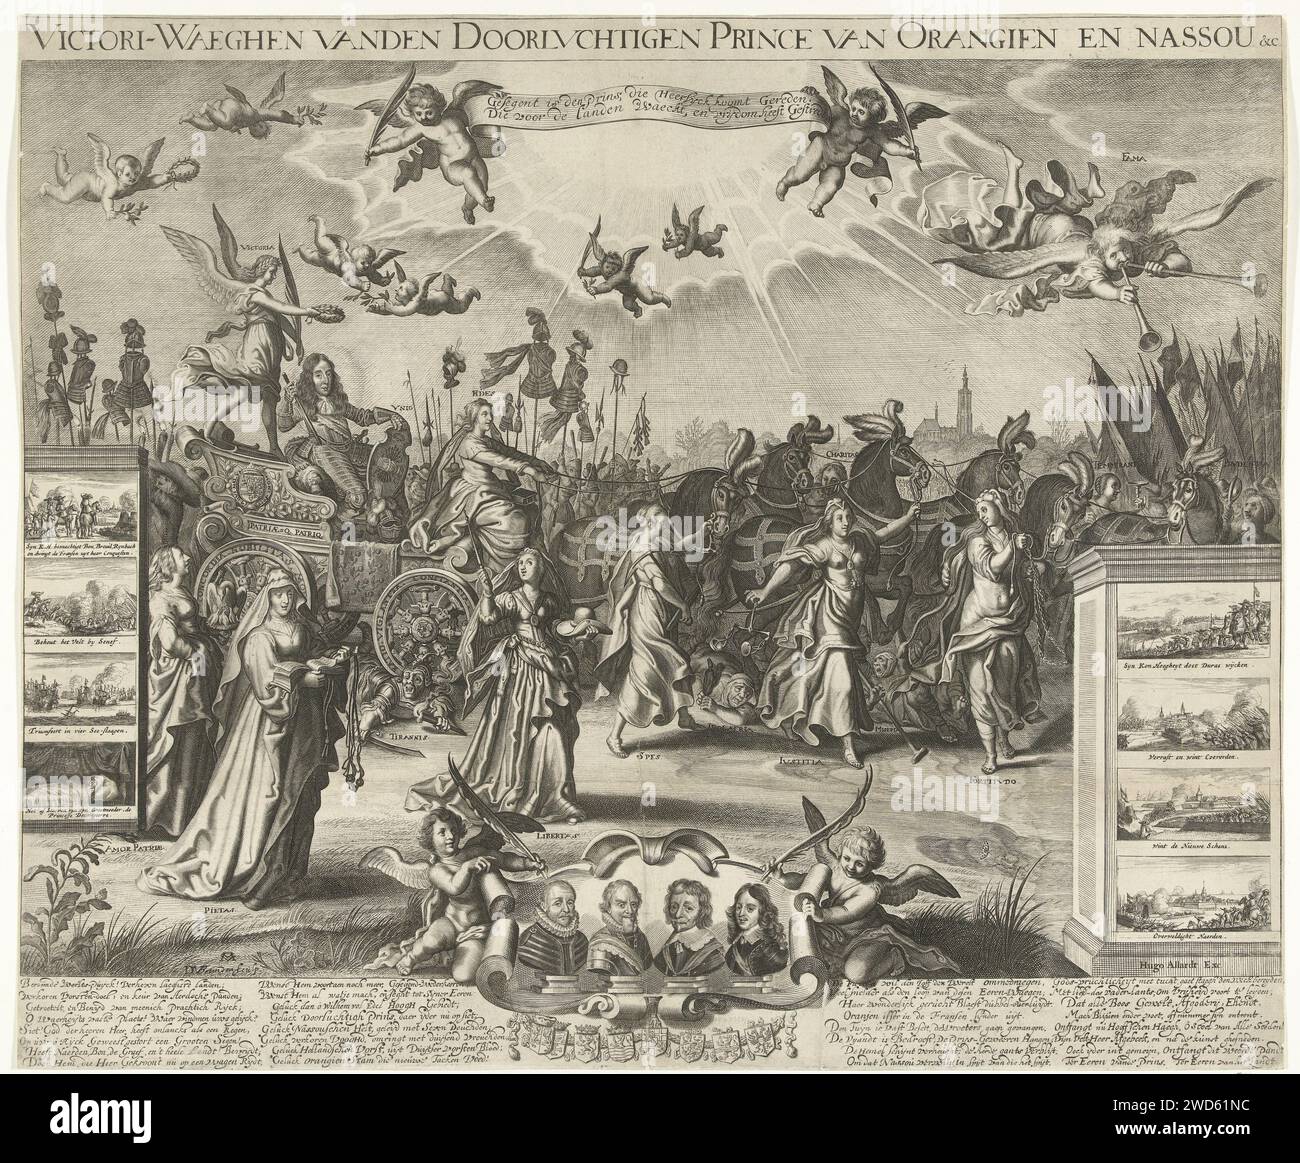 Triumphwagen du Prince d'Orange, 1675, Daniël van den Bremden, d'après Adriaen Pietersz van de Venne, 1675 estampe allégorie en l'honneur des conquêtes de Guillaume III en 1674-1675. Défilé triomphal avec le stadholder dans un char Gemende par la foi (Fides), les chevaux accompagnés par la vertu espérance (Spes), la justice (Justitia), le pouvoir (Fortitudo), l'amour (Charitas), la folie (temperantia) et la prudence (Prudentia). A gauche pour l'amour de voiture pour la patrie (Amor patriae), la piété (Pietas) et Vrijheid (Libertas). Dans l'air la renommée (fama) et les anges. Au premier plan deux anges avec un cartouche avec le po Banque D'Images